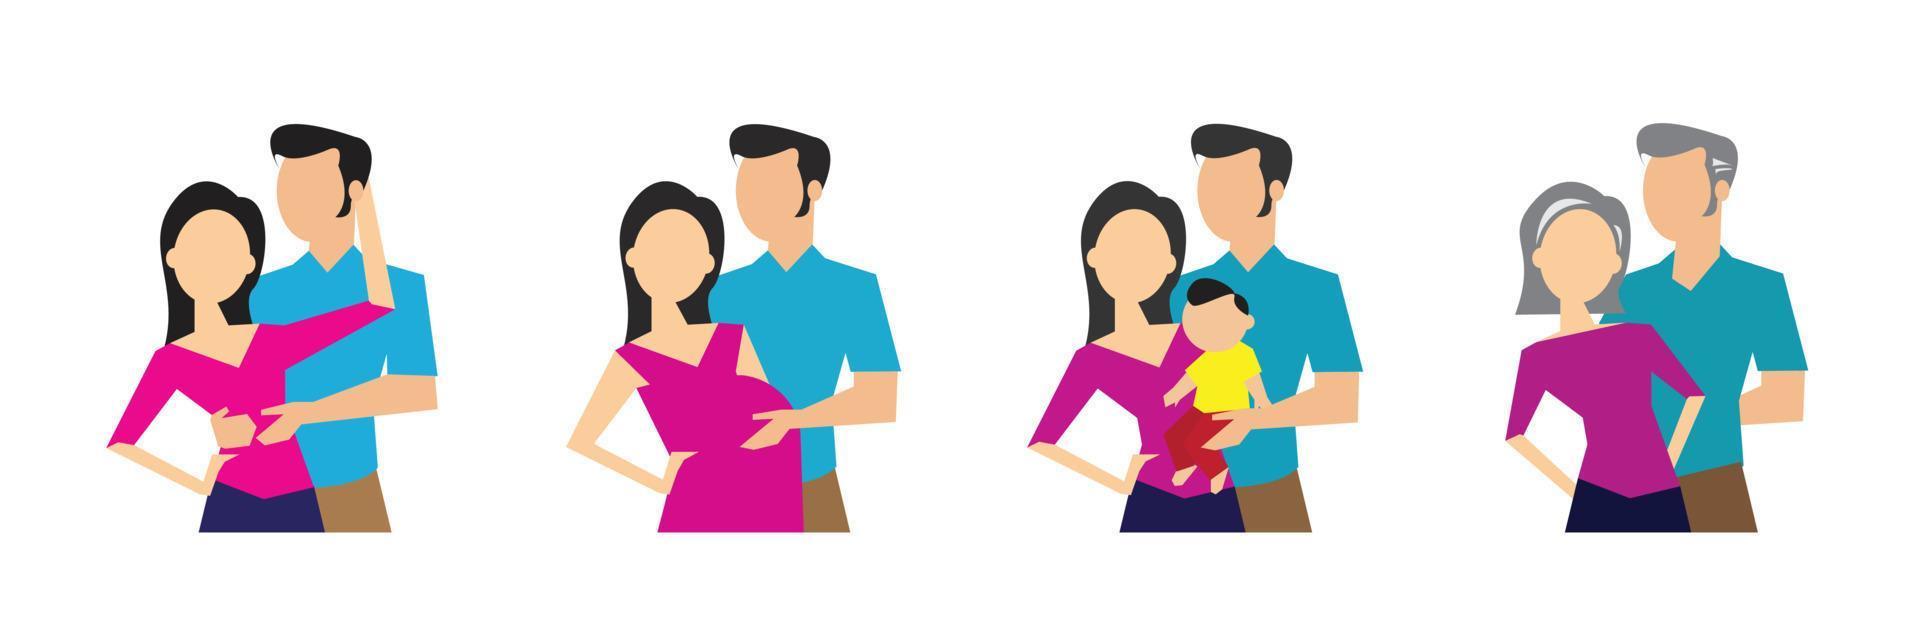 stades de développement de la génération familiale. illustration vectorielle vecteur